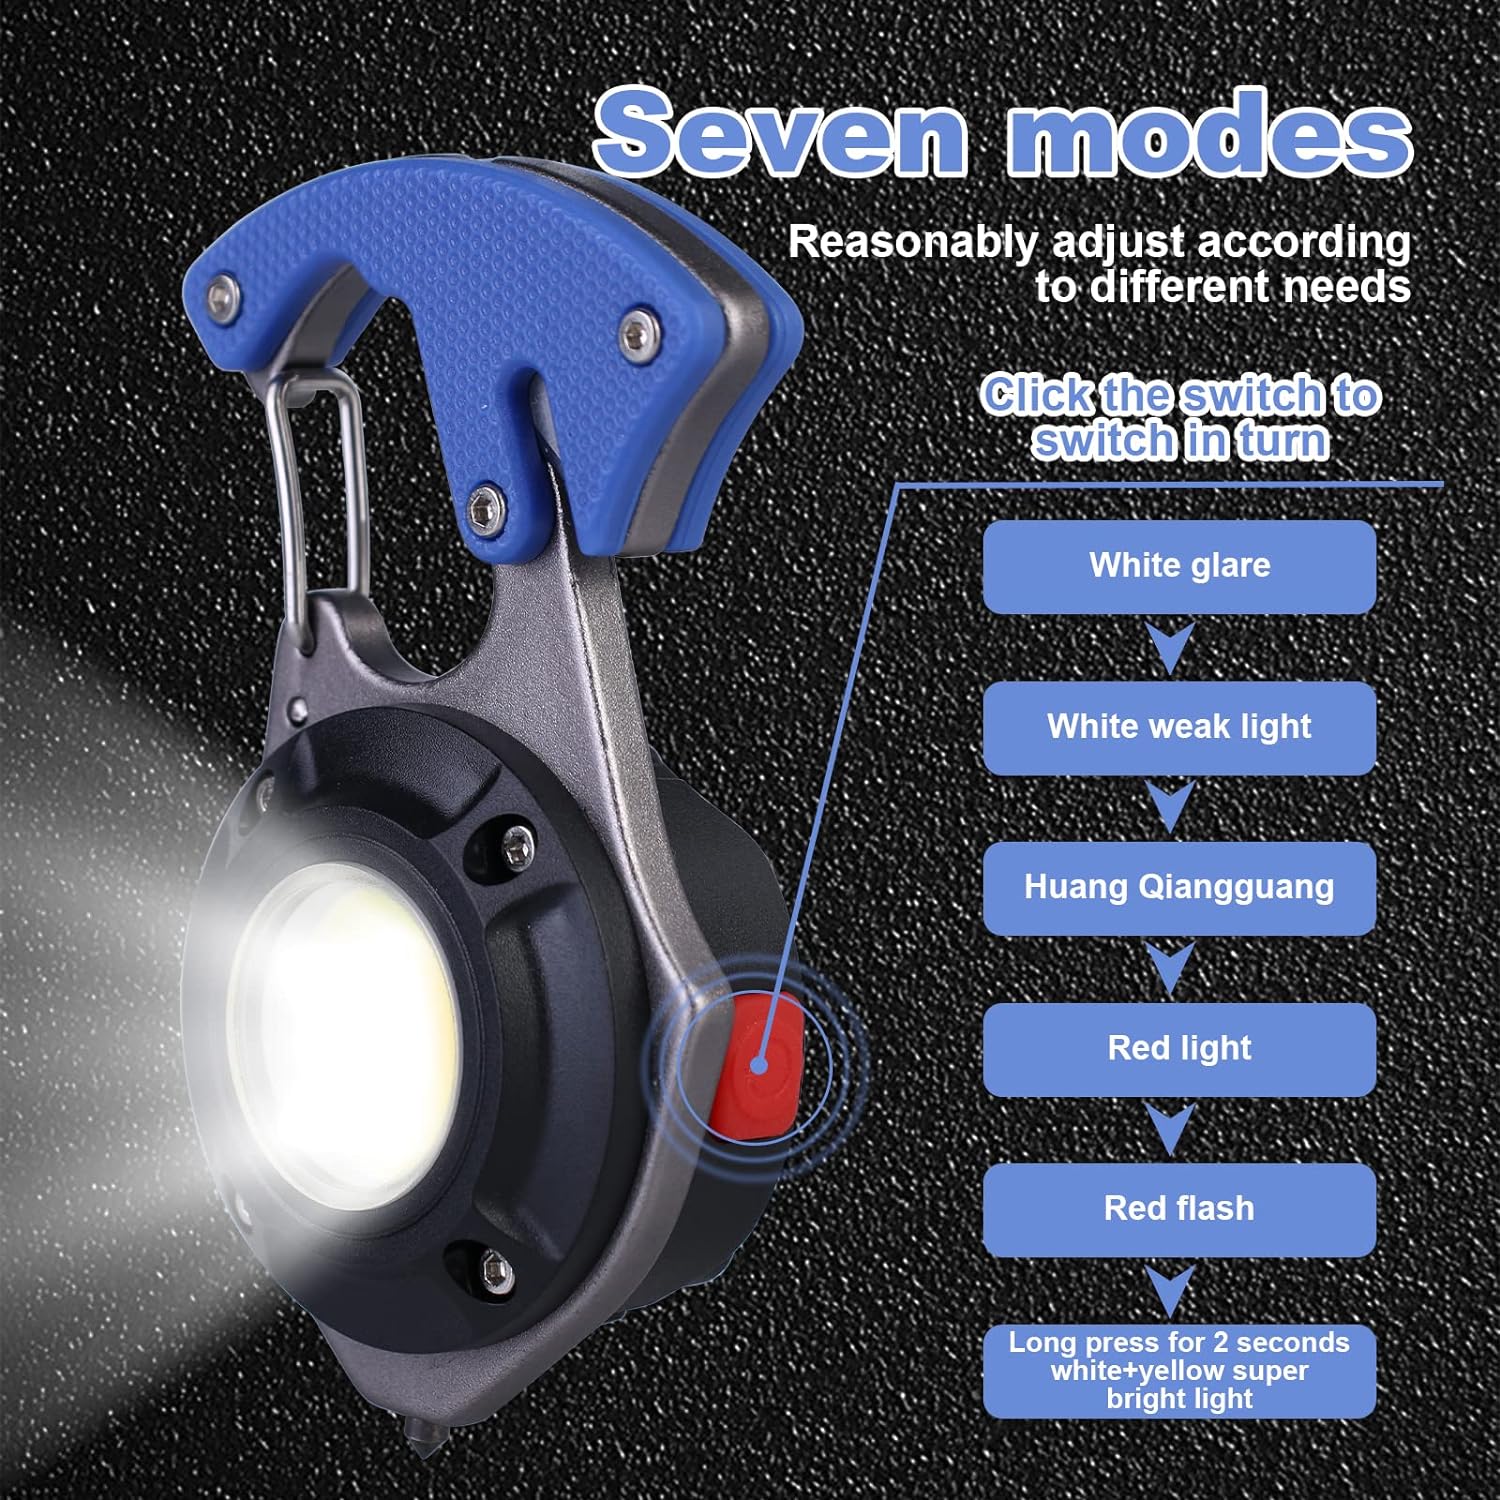 سلسلة مفاتيح متعددة الوظائف بإضاءة LED للطوارئ: حلقة مفاتيح صغيرة بـ7 أوضاع اضاءة، قاطع أمان ومطرقة أمان للطوارئ للتخييم وإصلاح الإضاءة في حالات الطوارئ [فئة الطاقة A+]